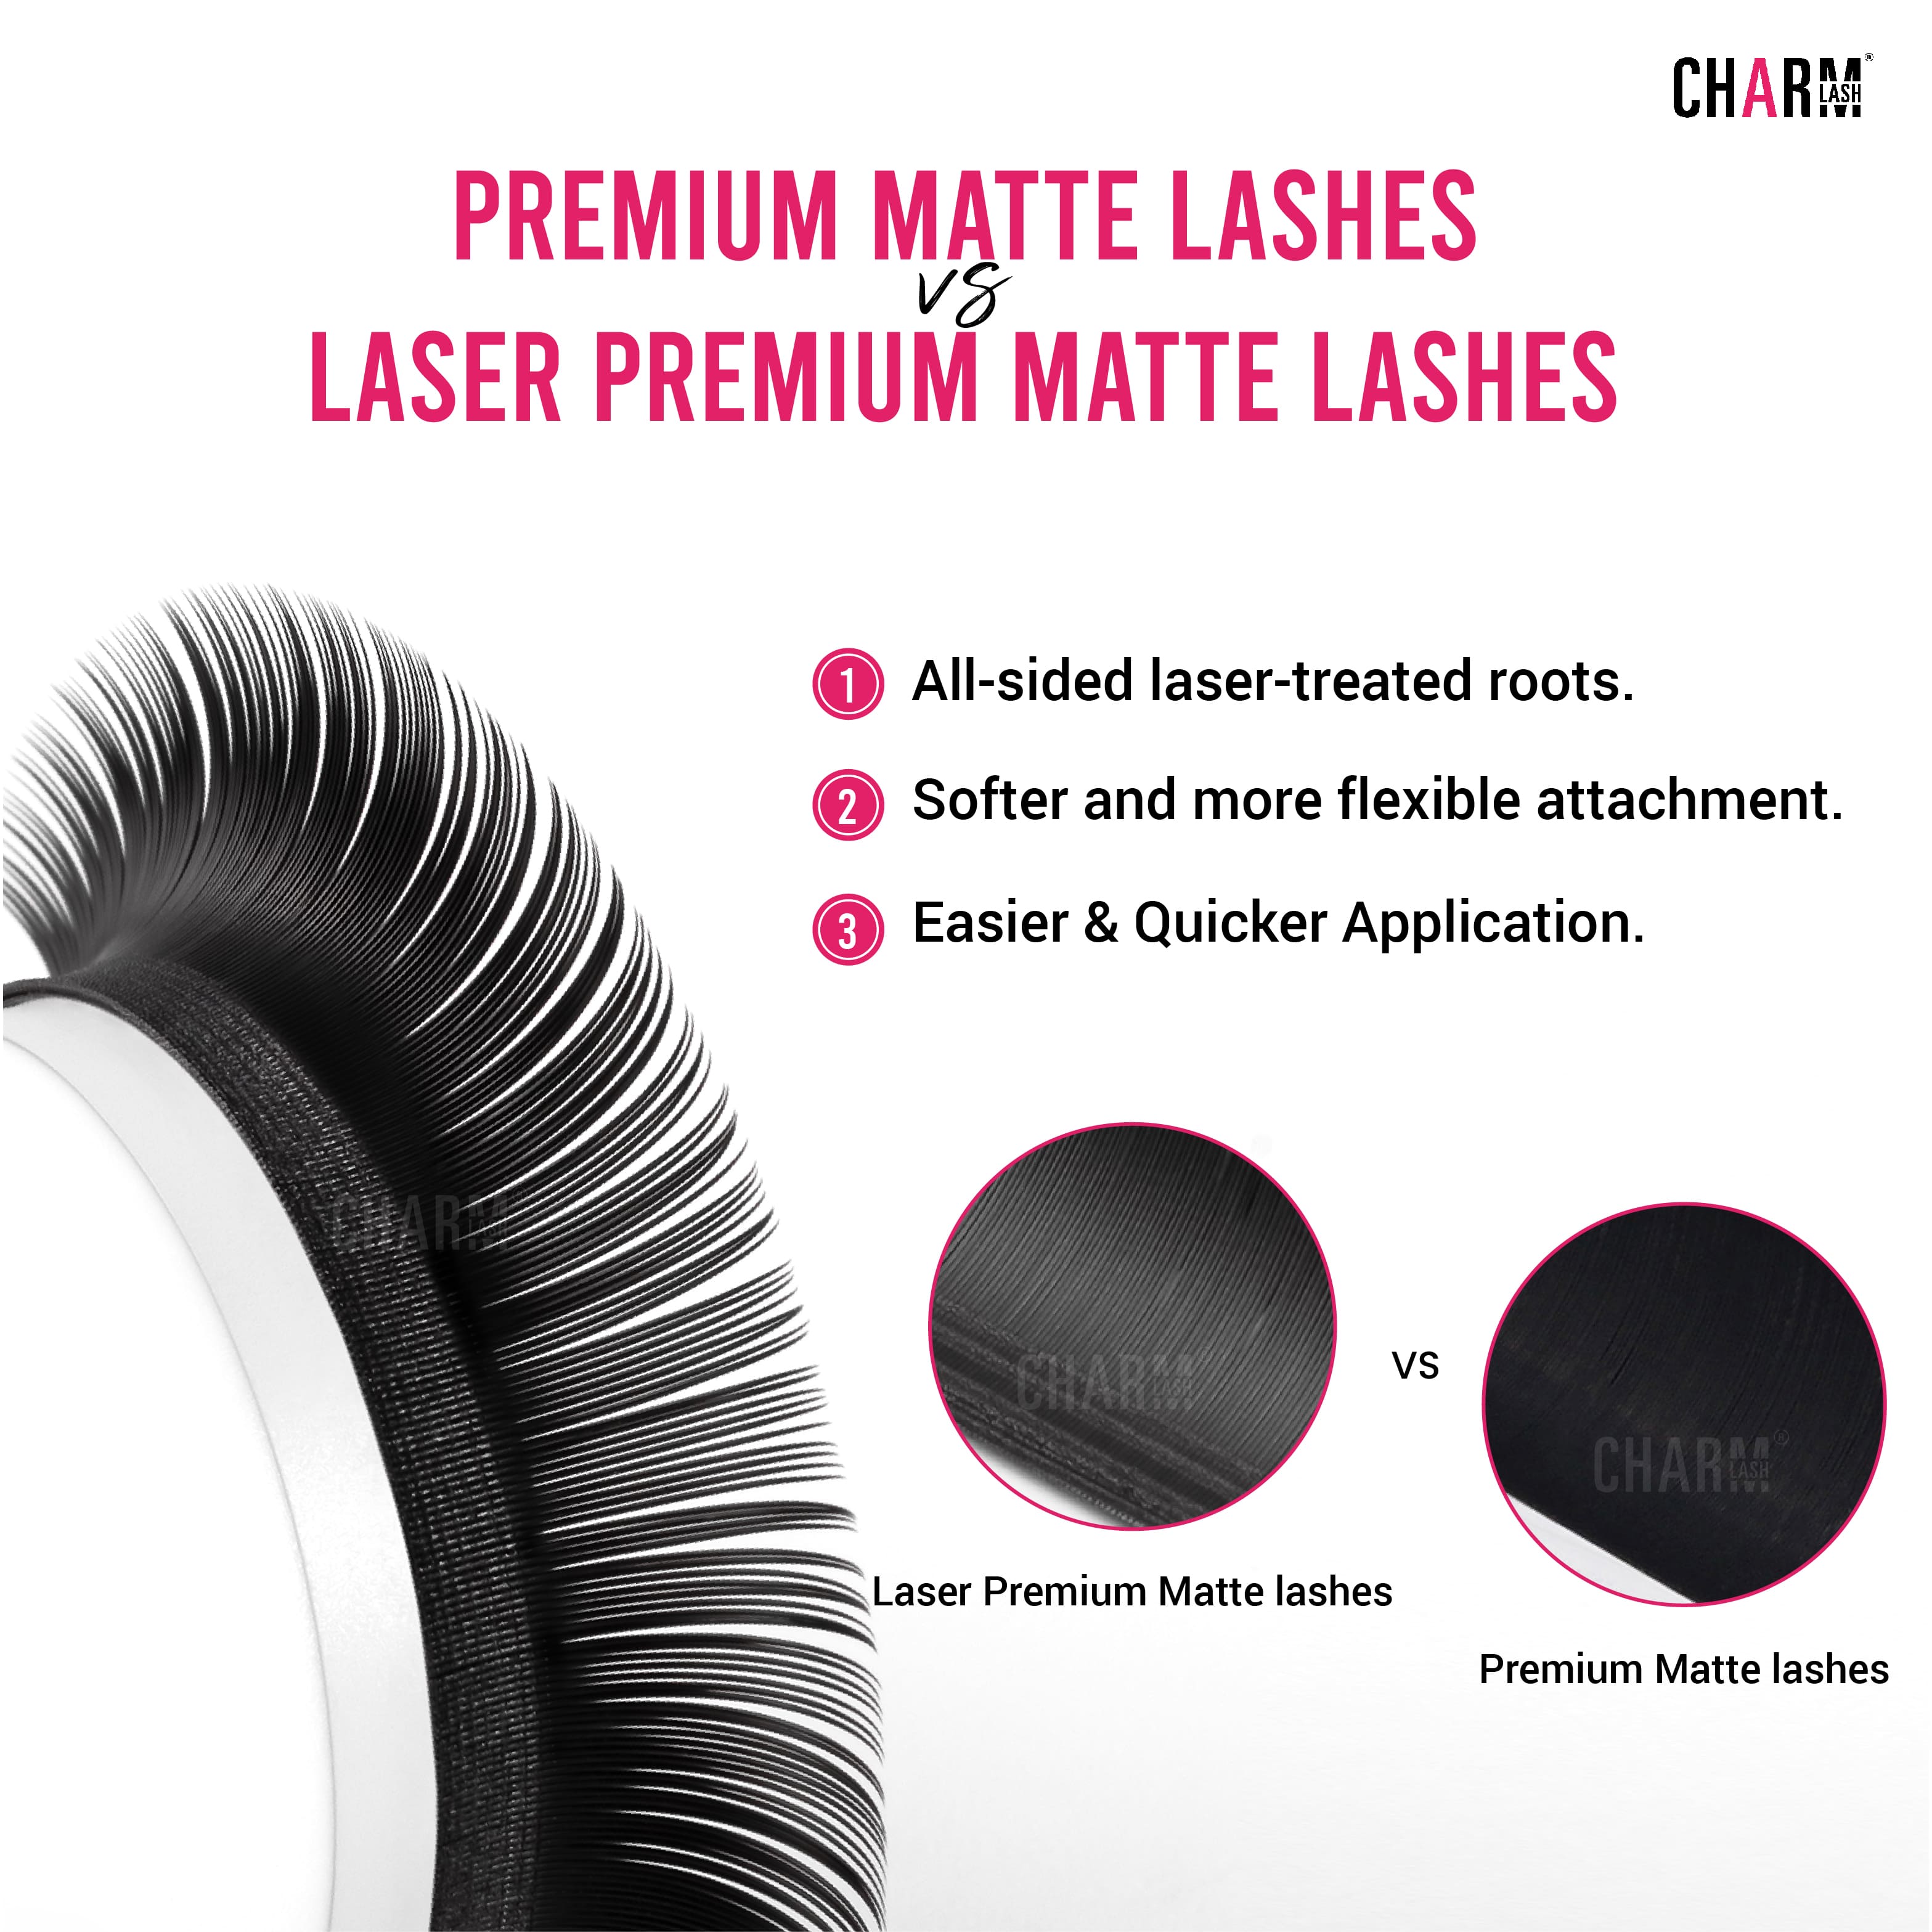 Premium Matte lashes and Laser Premium Matte lashes 